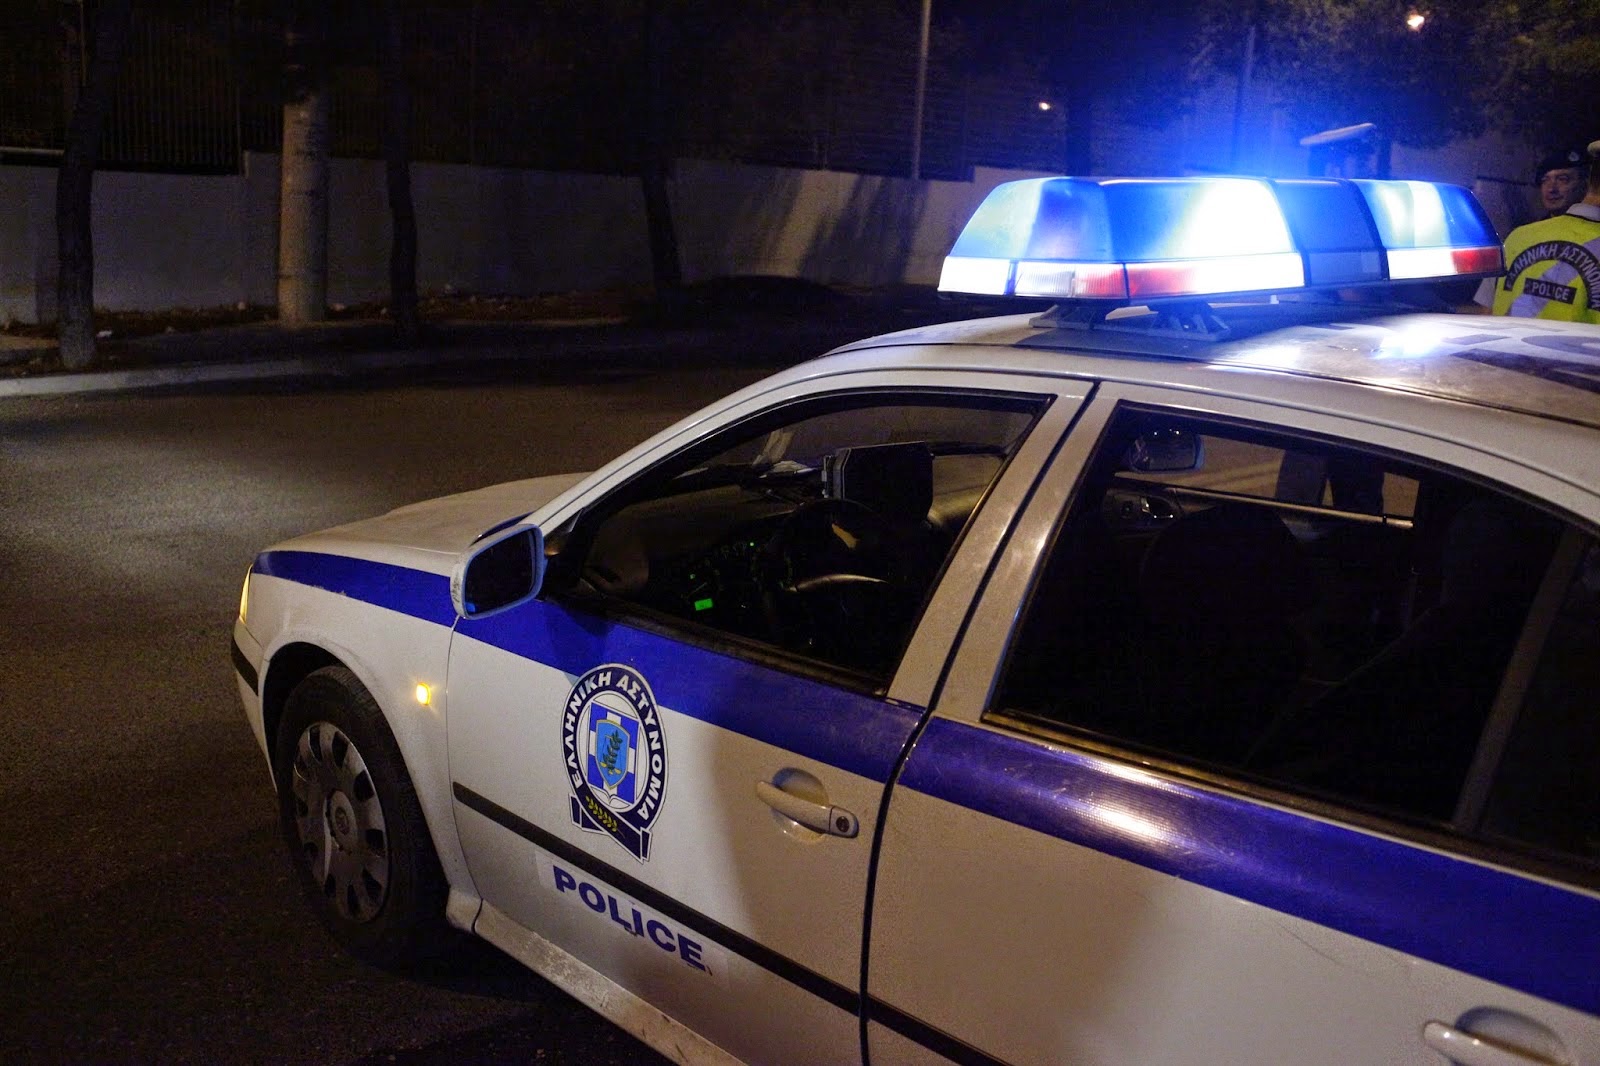 Ηράκλειο: "Πιστολέρο" έριξε μπαλωθιές και εξαφανίστηκε με το αυτοκίνητό του